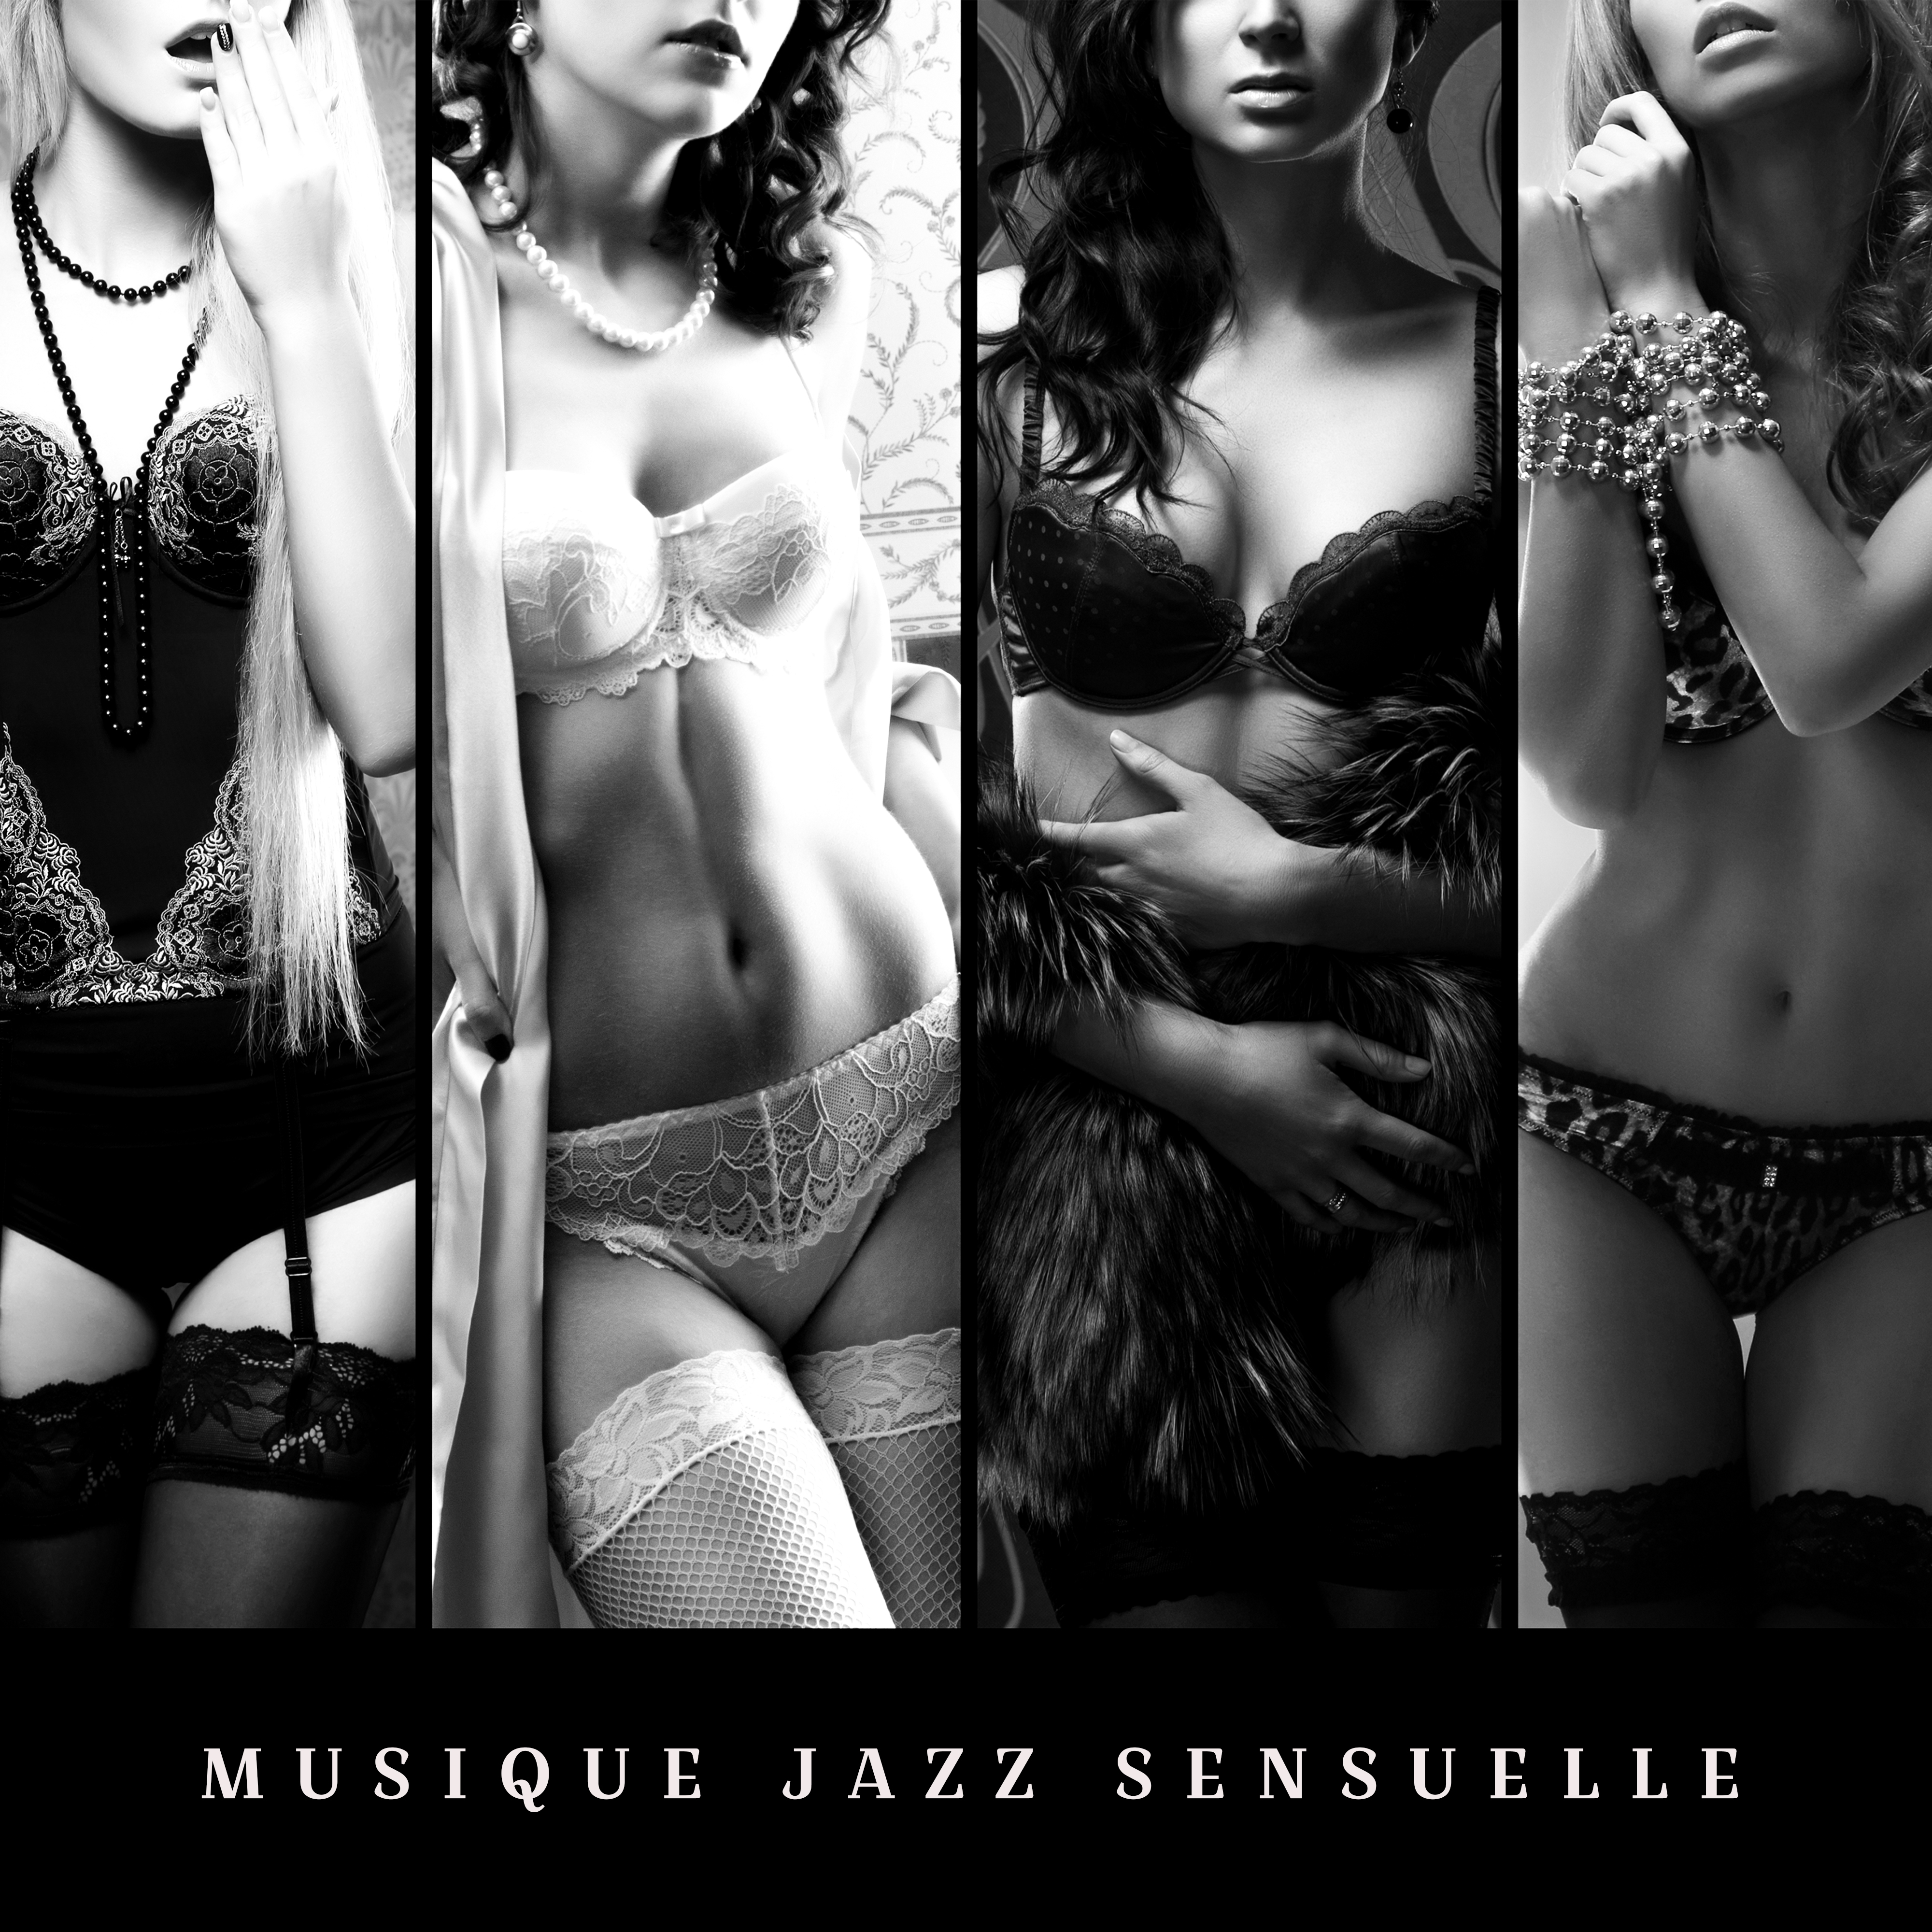 Musique jazz sensuelle